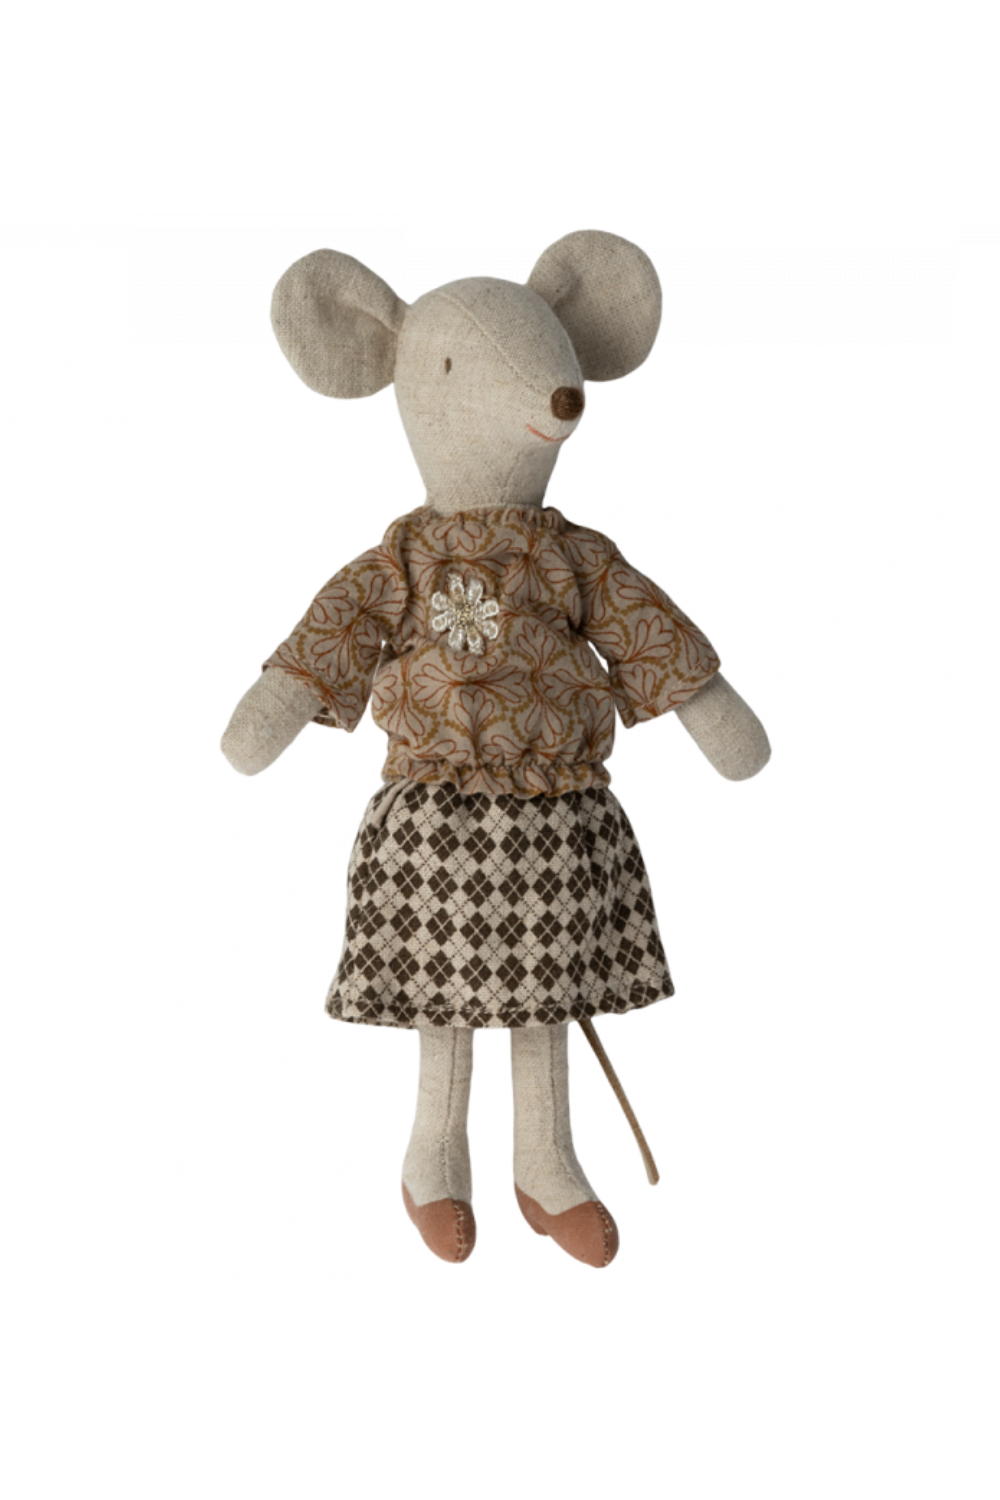 Grandma Mouse Blouse & Skirt - Maileg Clothing Set for Dolls